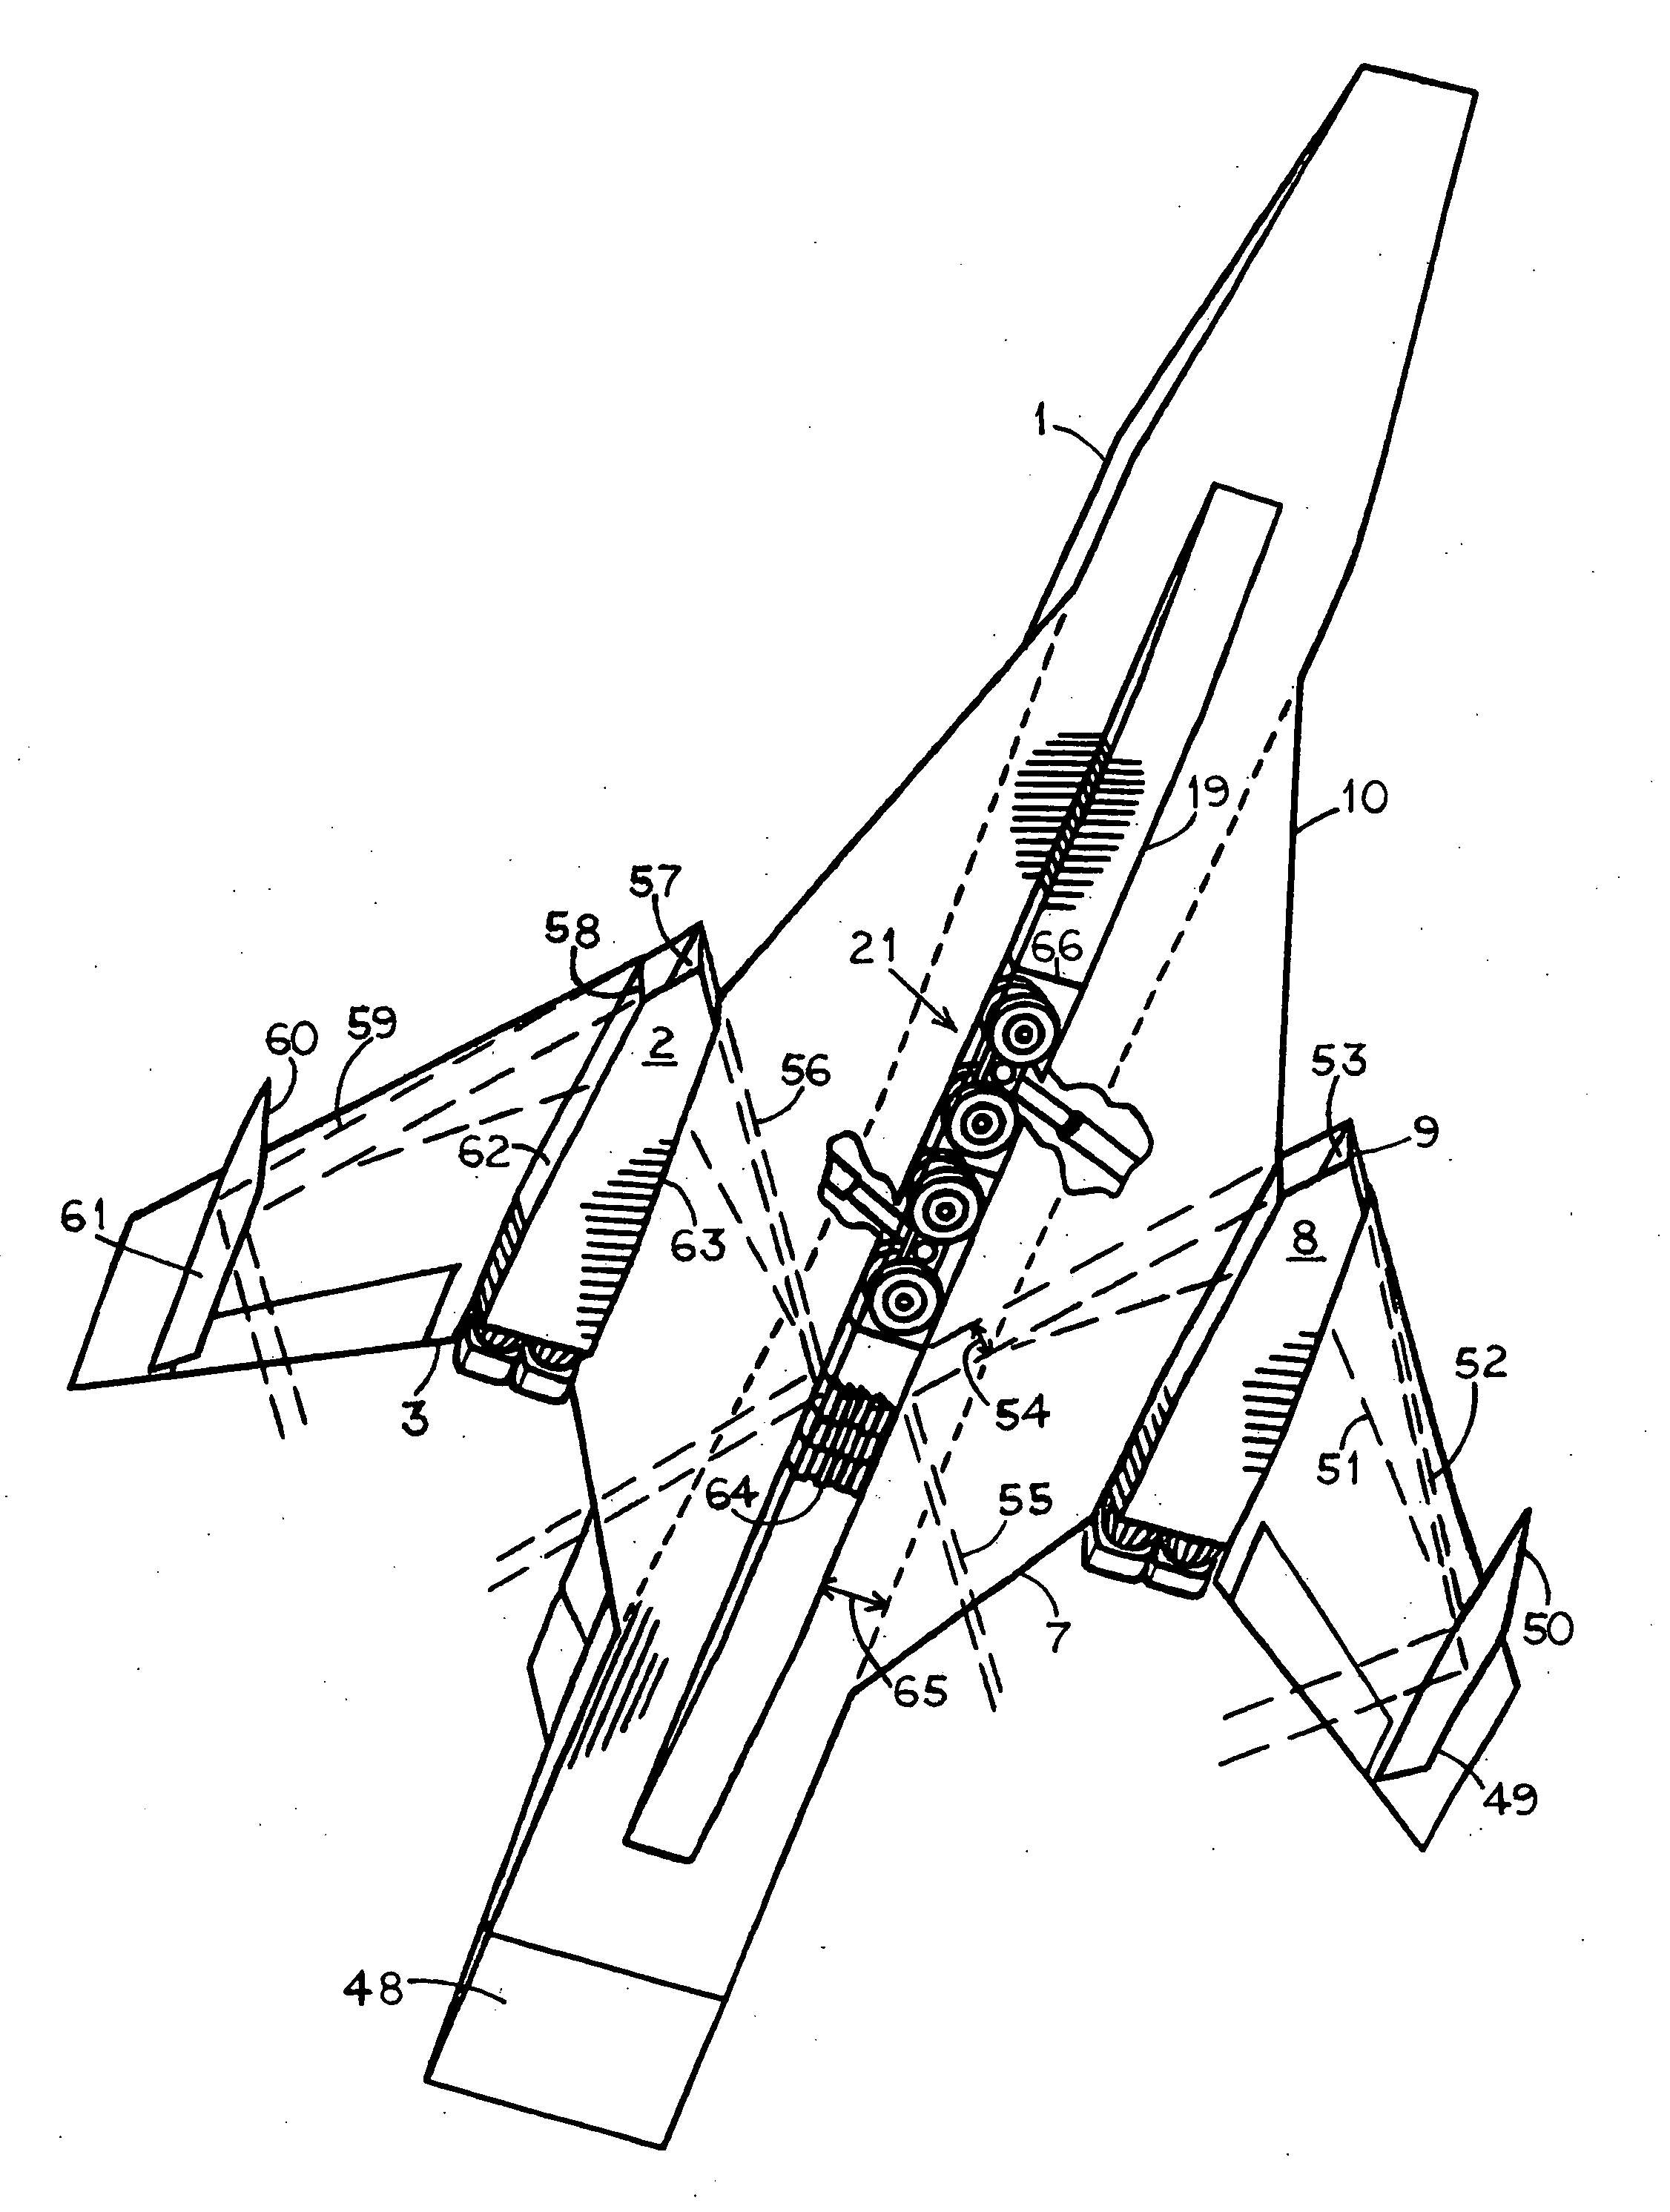 Compression-lift aircraft